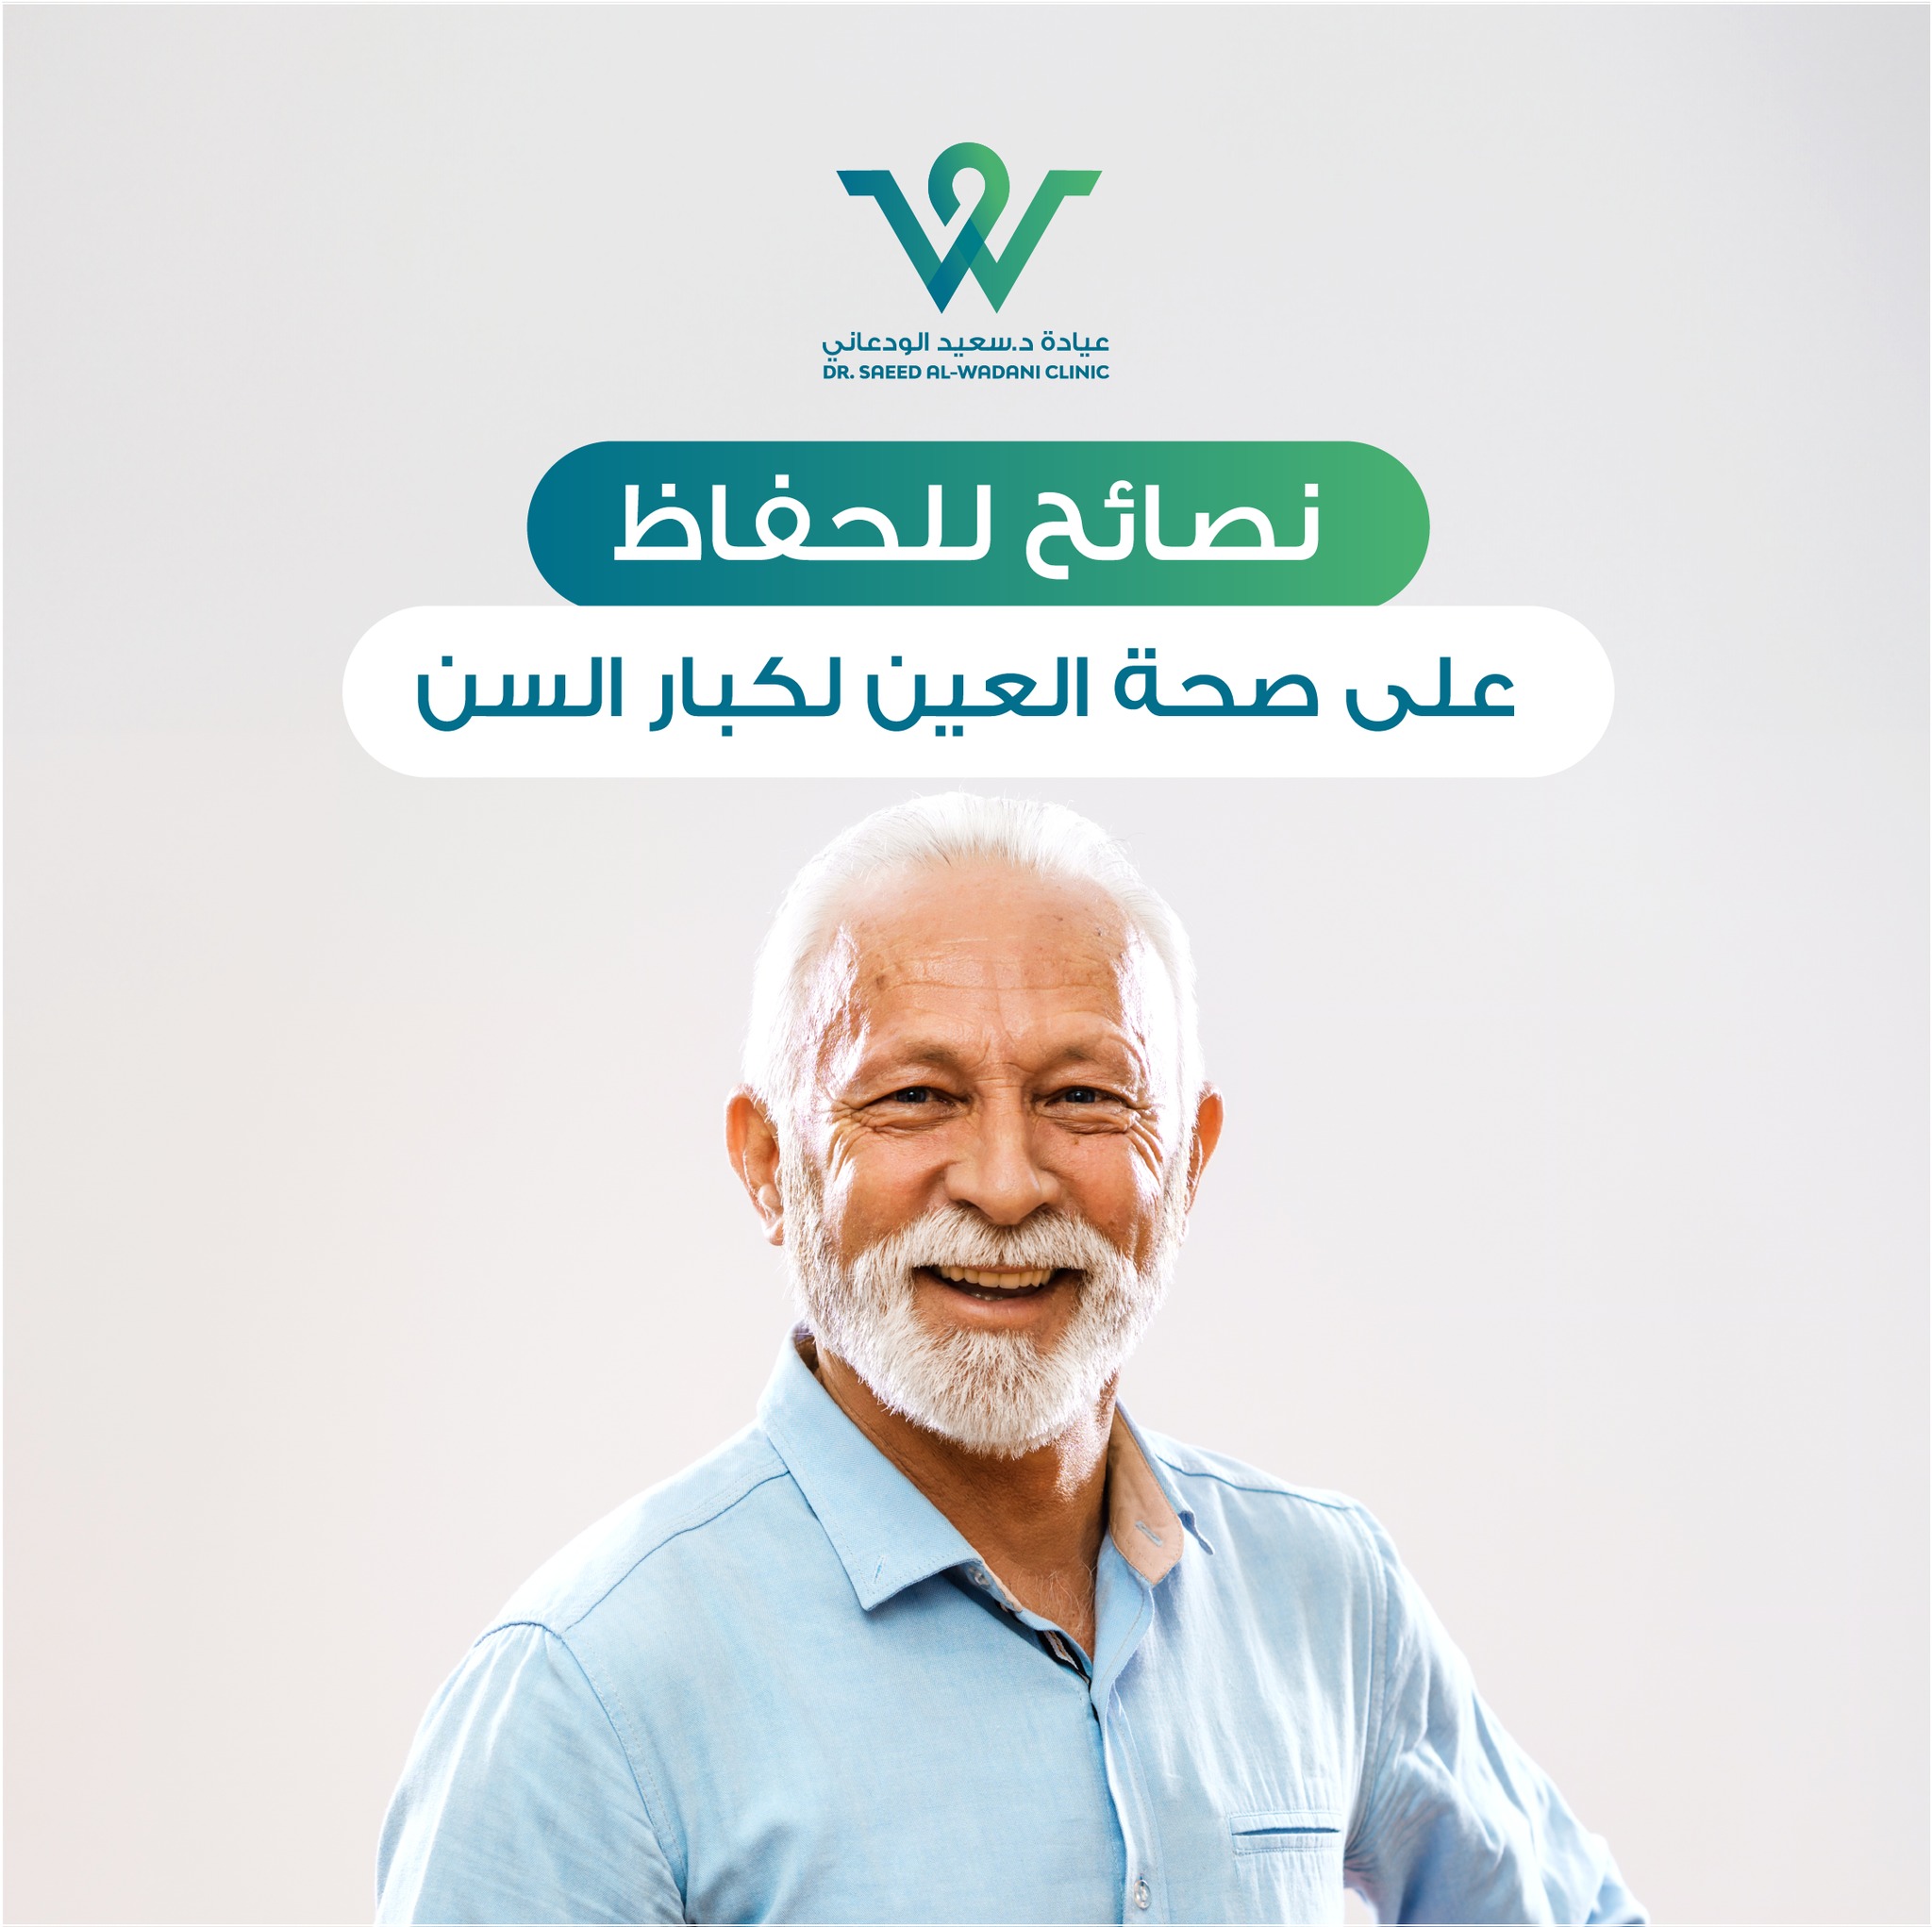 نصائح لحماية العين لكبار السن، تعتبر العين من أهم الأعضاء في جسم الإنسان، ومع تقدم العمر تزداد الاحتياجات والمشاكل الصحية المرتبطة بالعين.